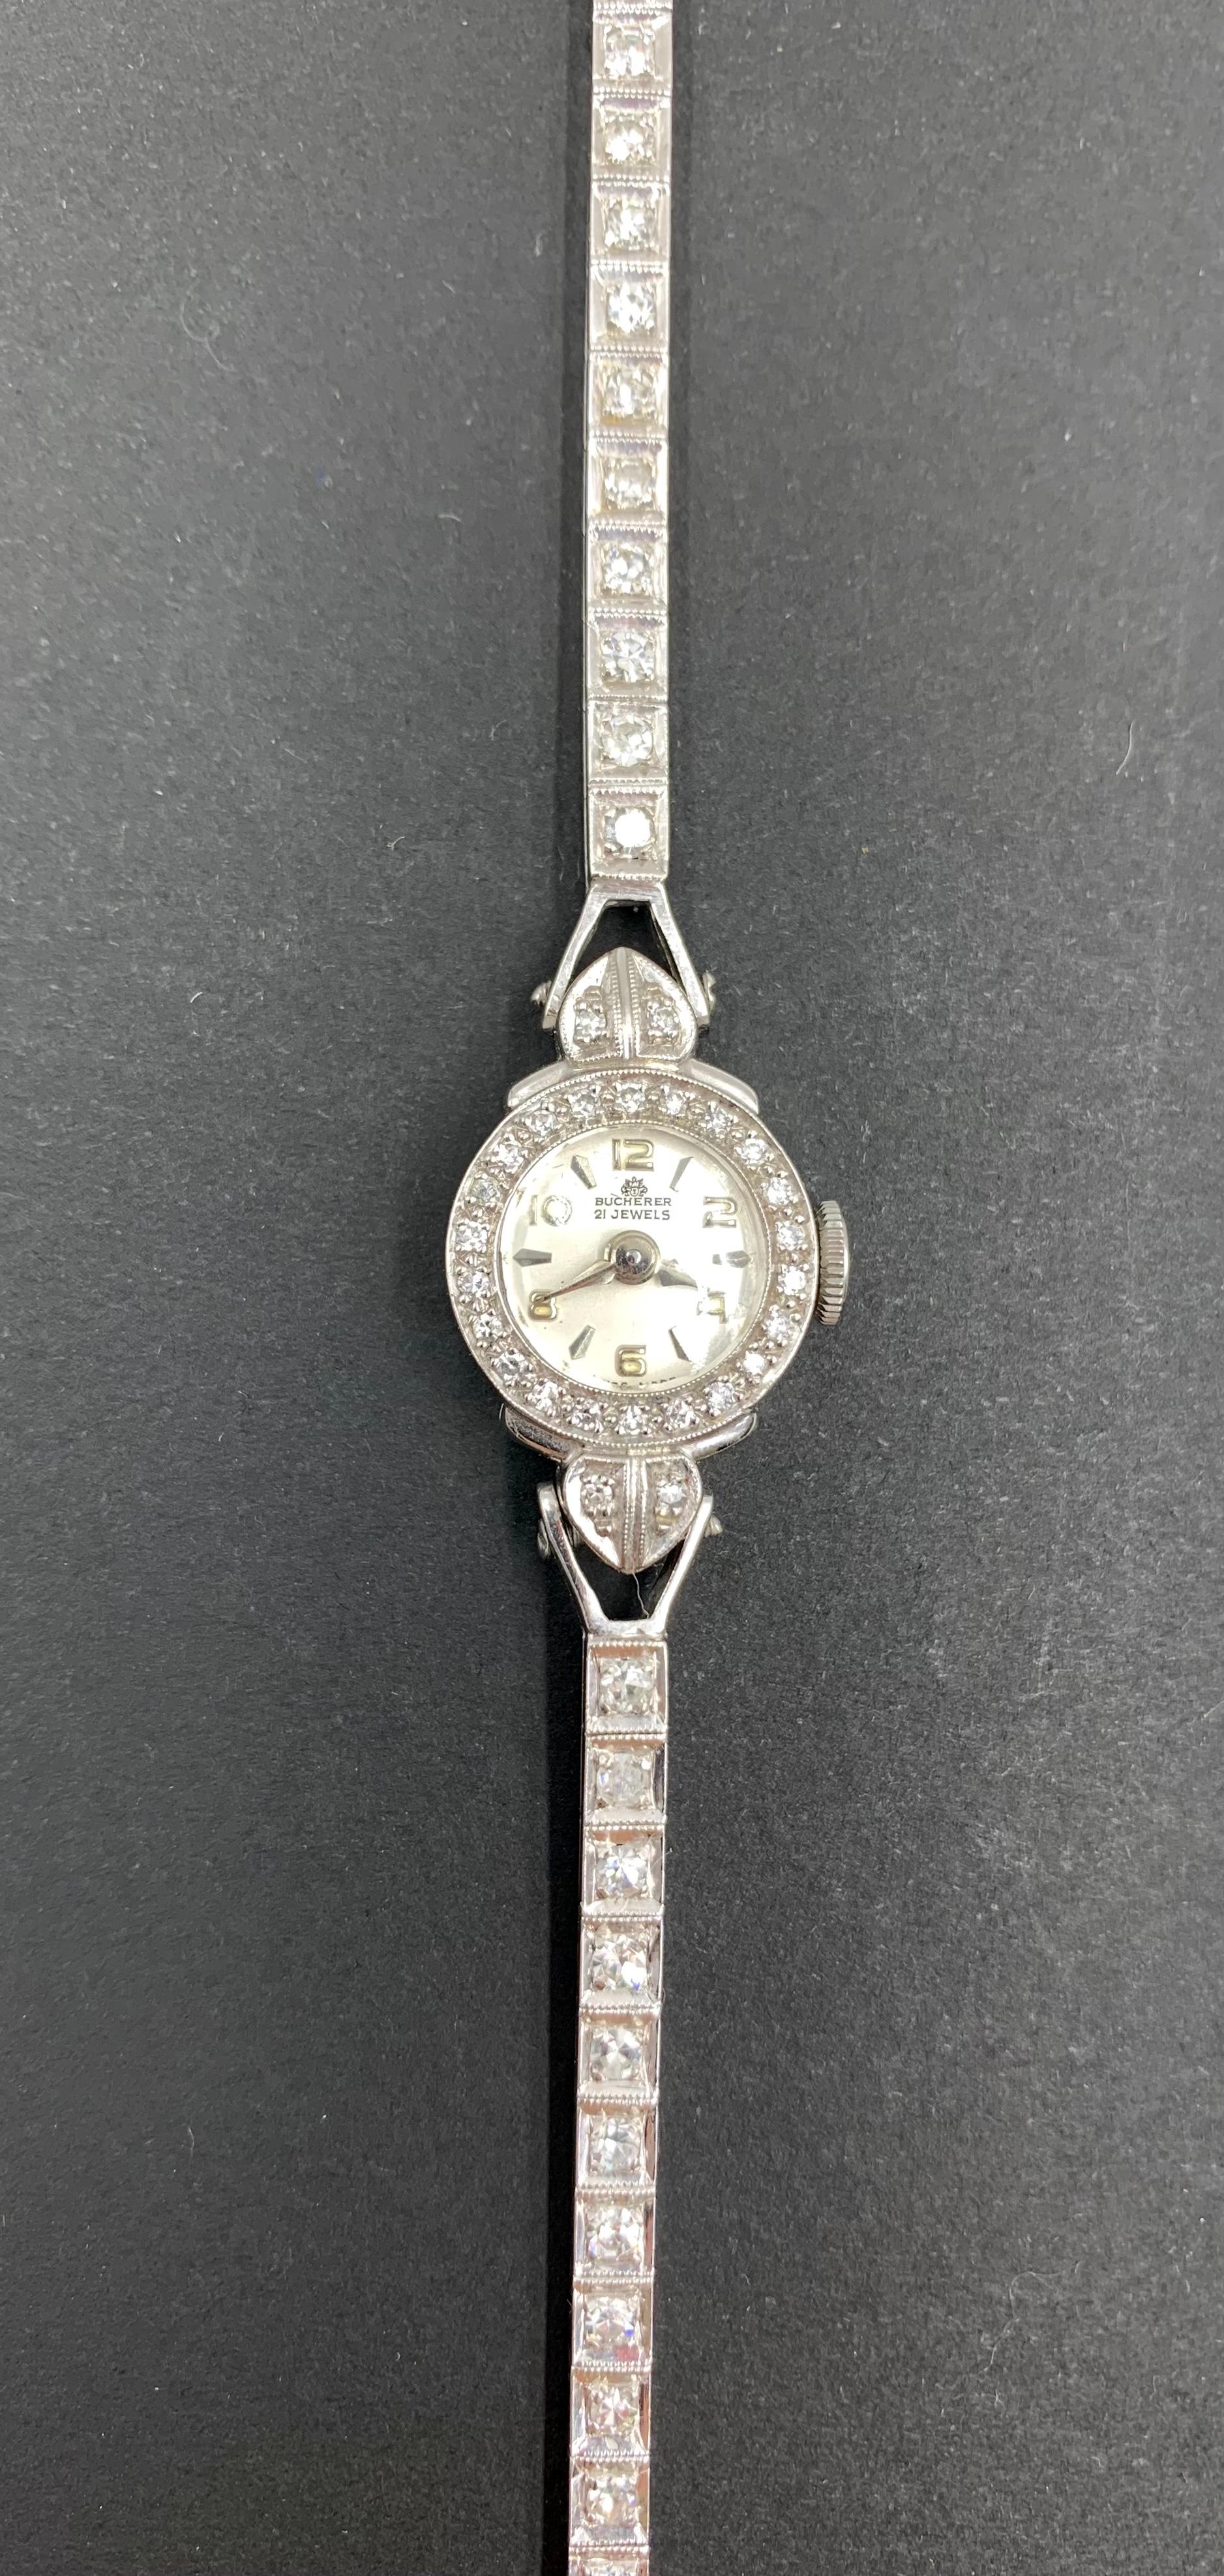 Elegante montre bracelet Bucherer d'époque Art Déco en diamant, platine et or blanc 14 carats de forme réduite.
Début du 20e siècle
La reine Élisabeth II en a porté une lors de son couronnement, la princesse Diana a souvent été photographiée avec